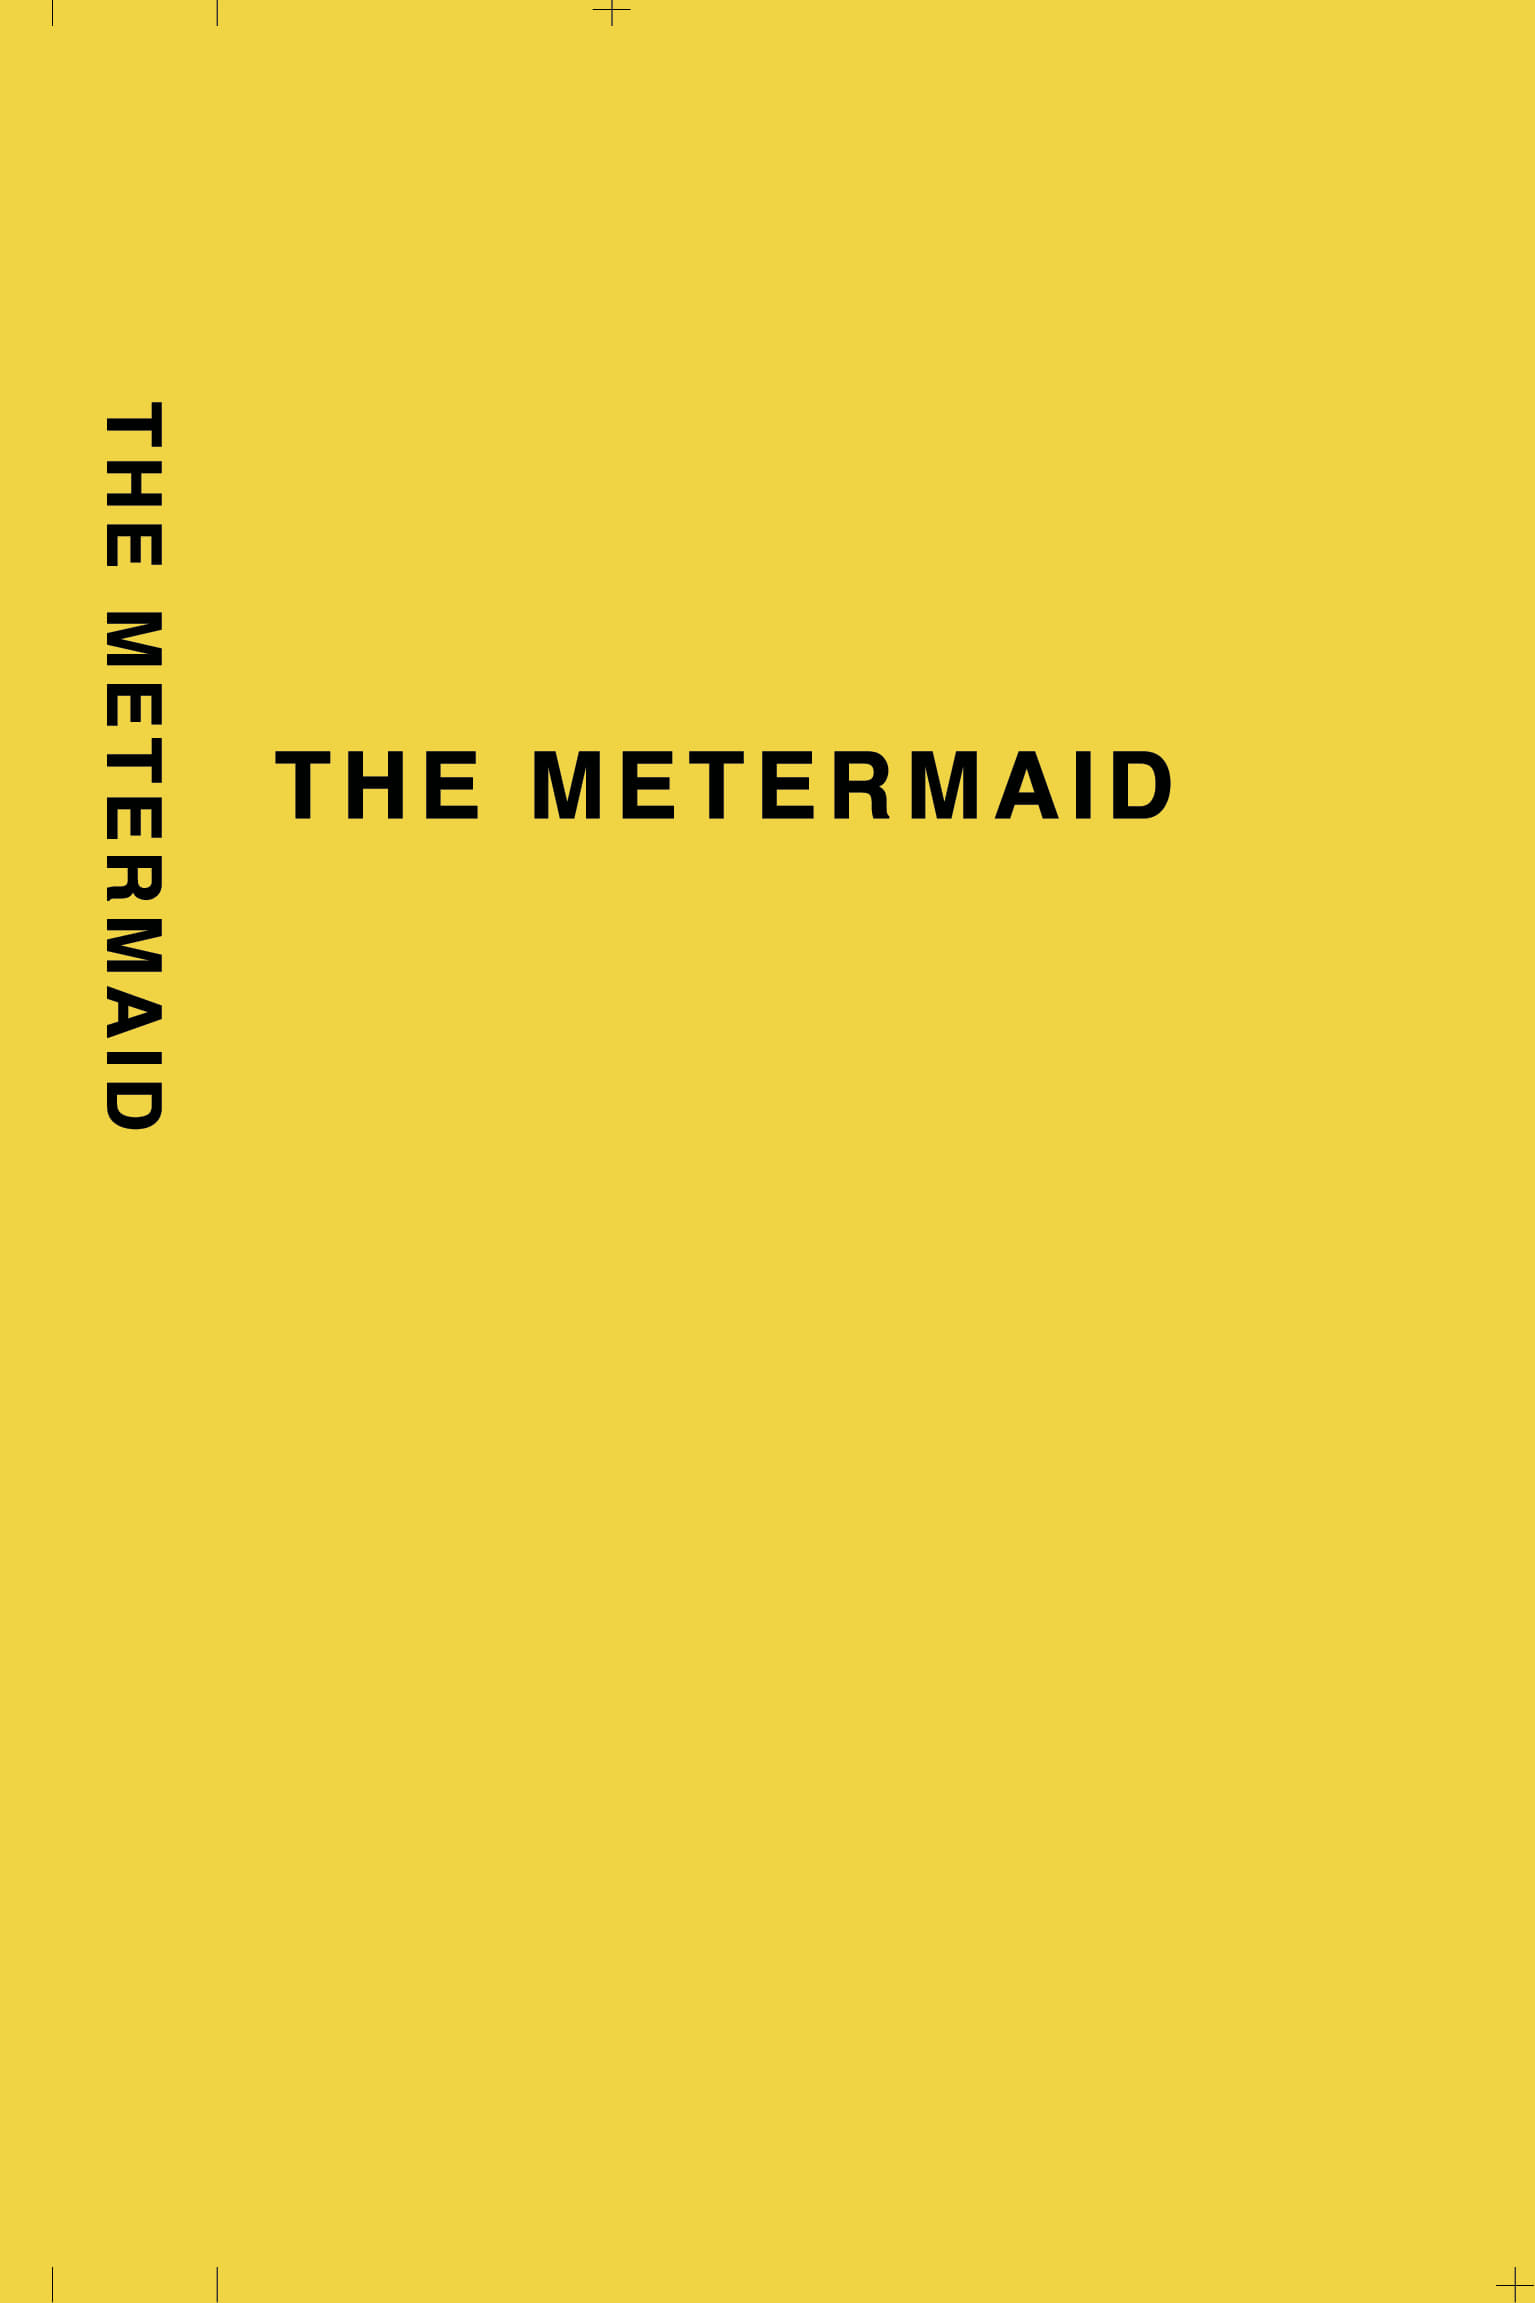 THE METERMAID